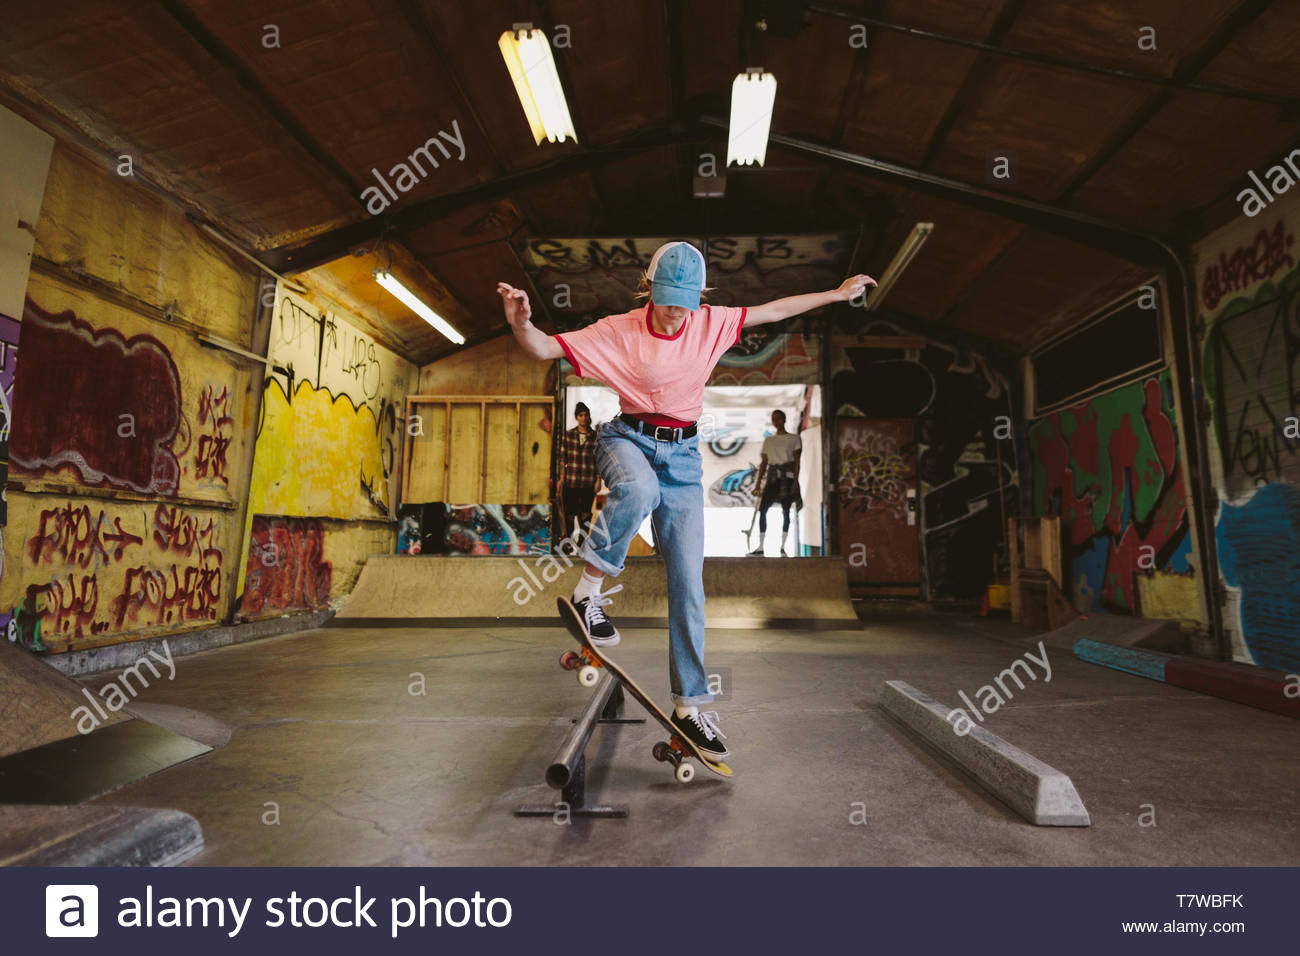 Woman skateboarding, sliding on rail at indoor skate park Stock Photo